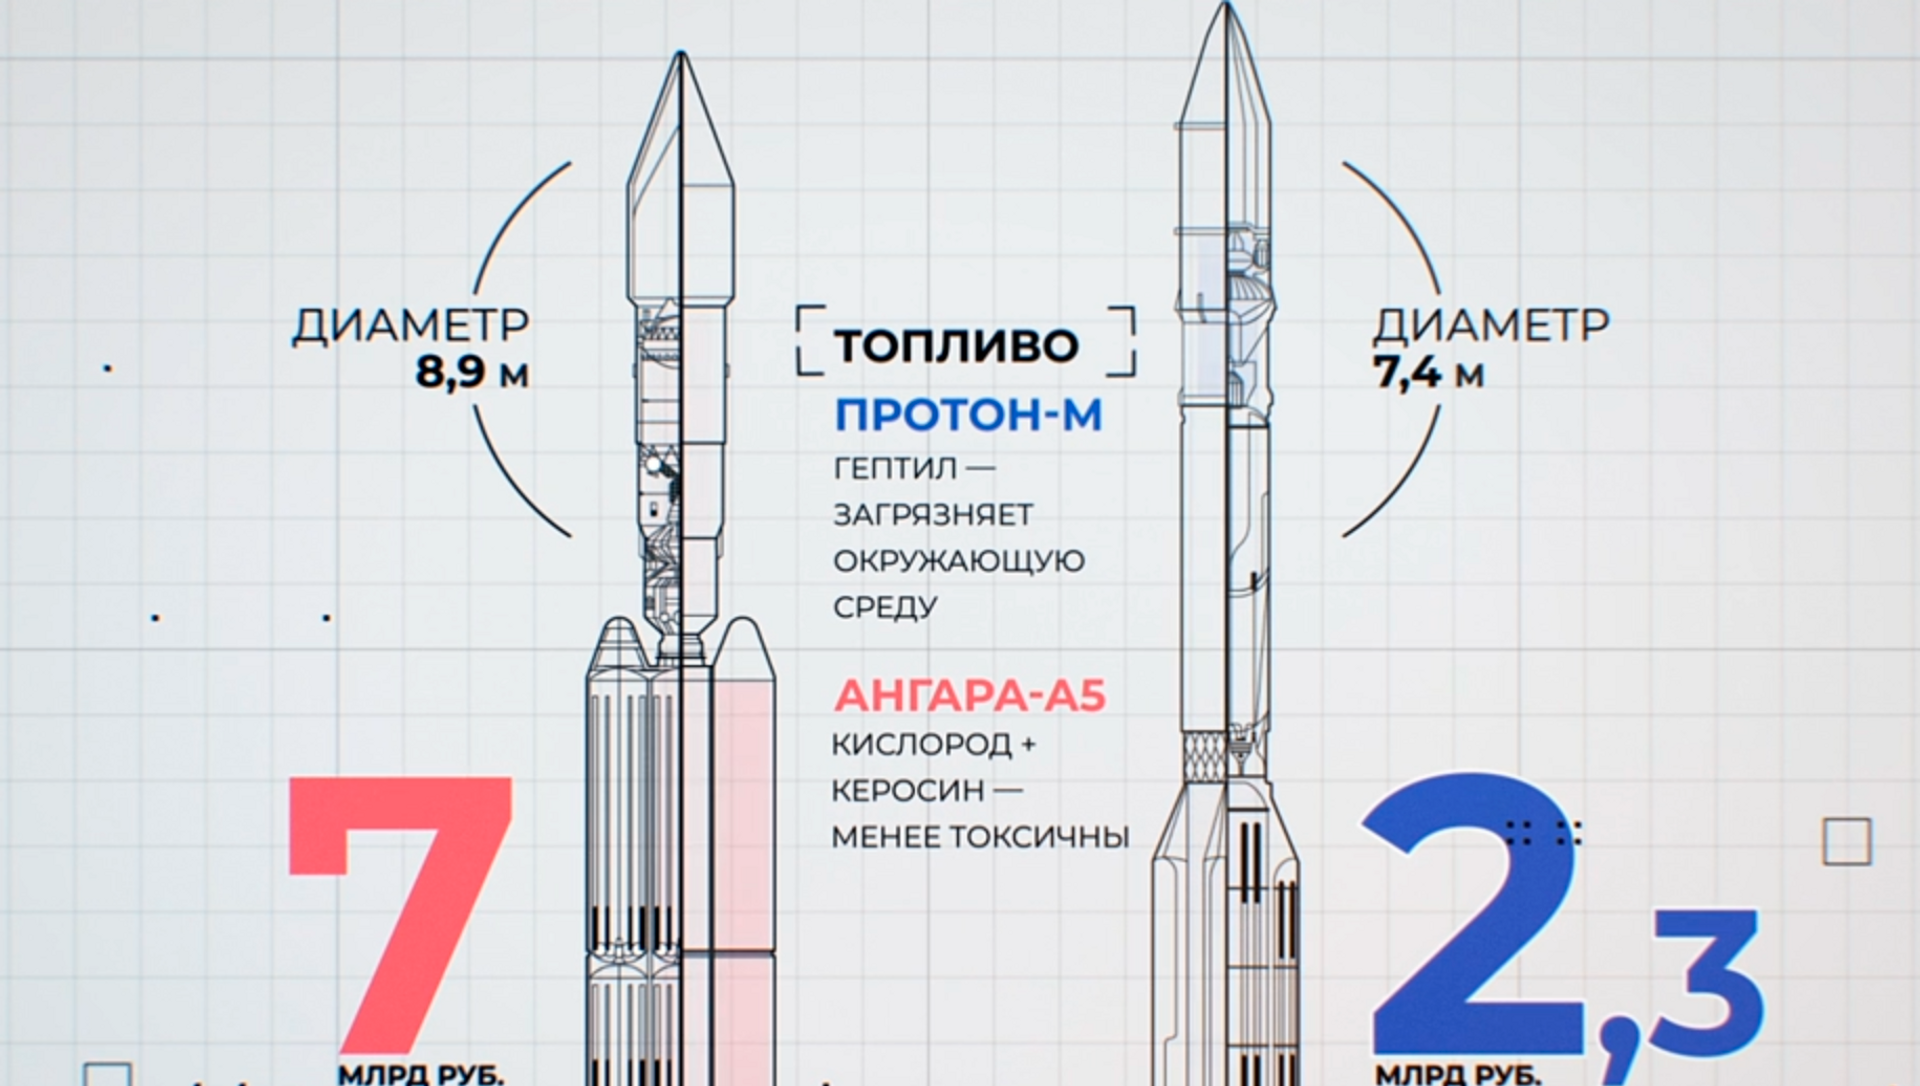 Ангара а5м. Ракета-носитель "Ангара-а5". Ракета носитель Ангара а5 чертеж. Ангара-1.2 ракета-носитель схема. Ангара 1.1 ракета-носитель.